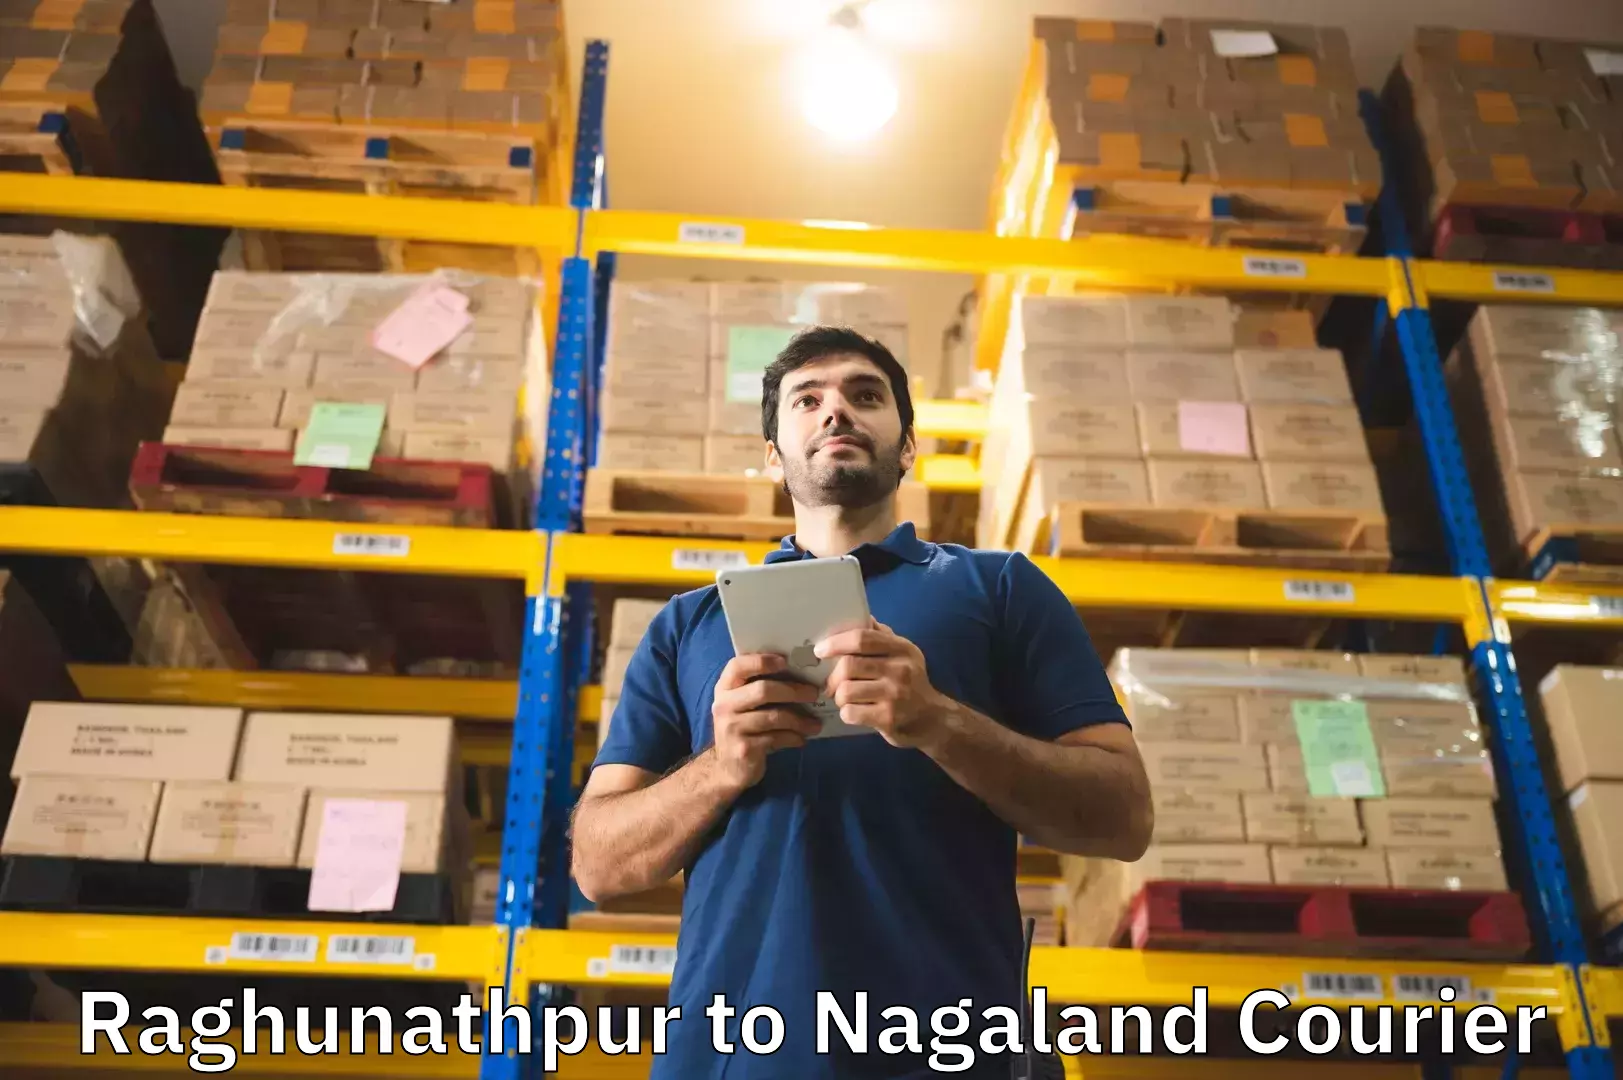 Digital baggage courier Raghunathpur to NIT Nagaland